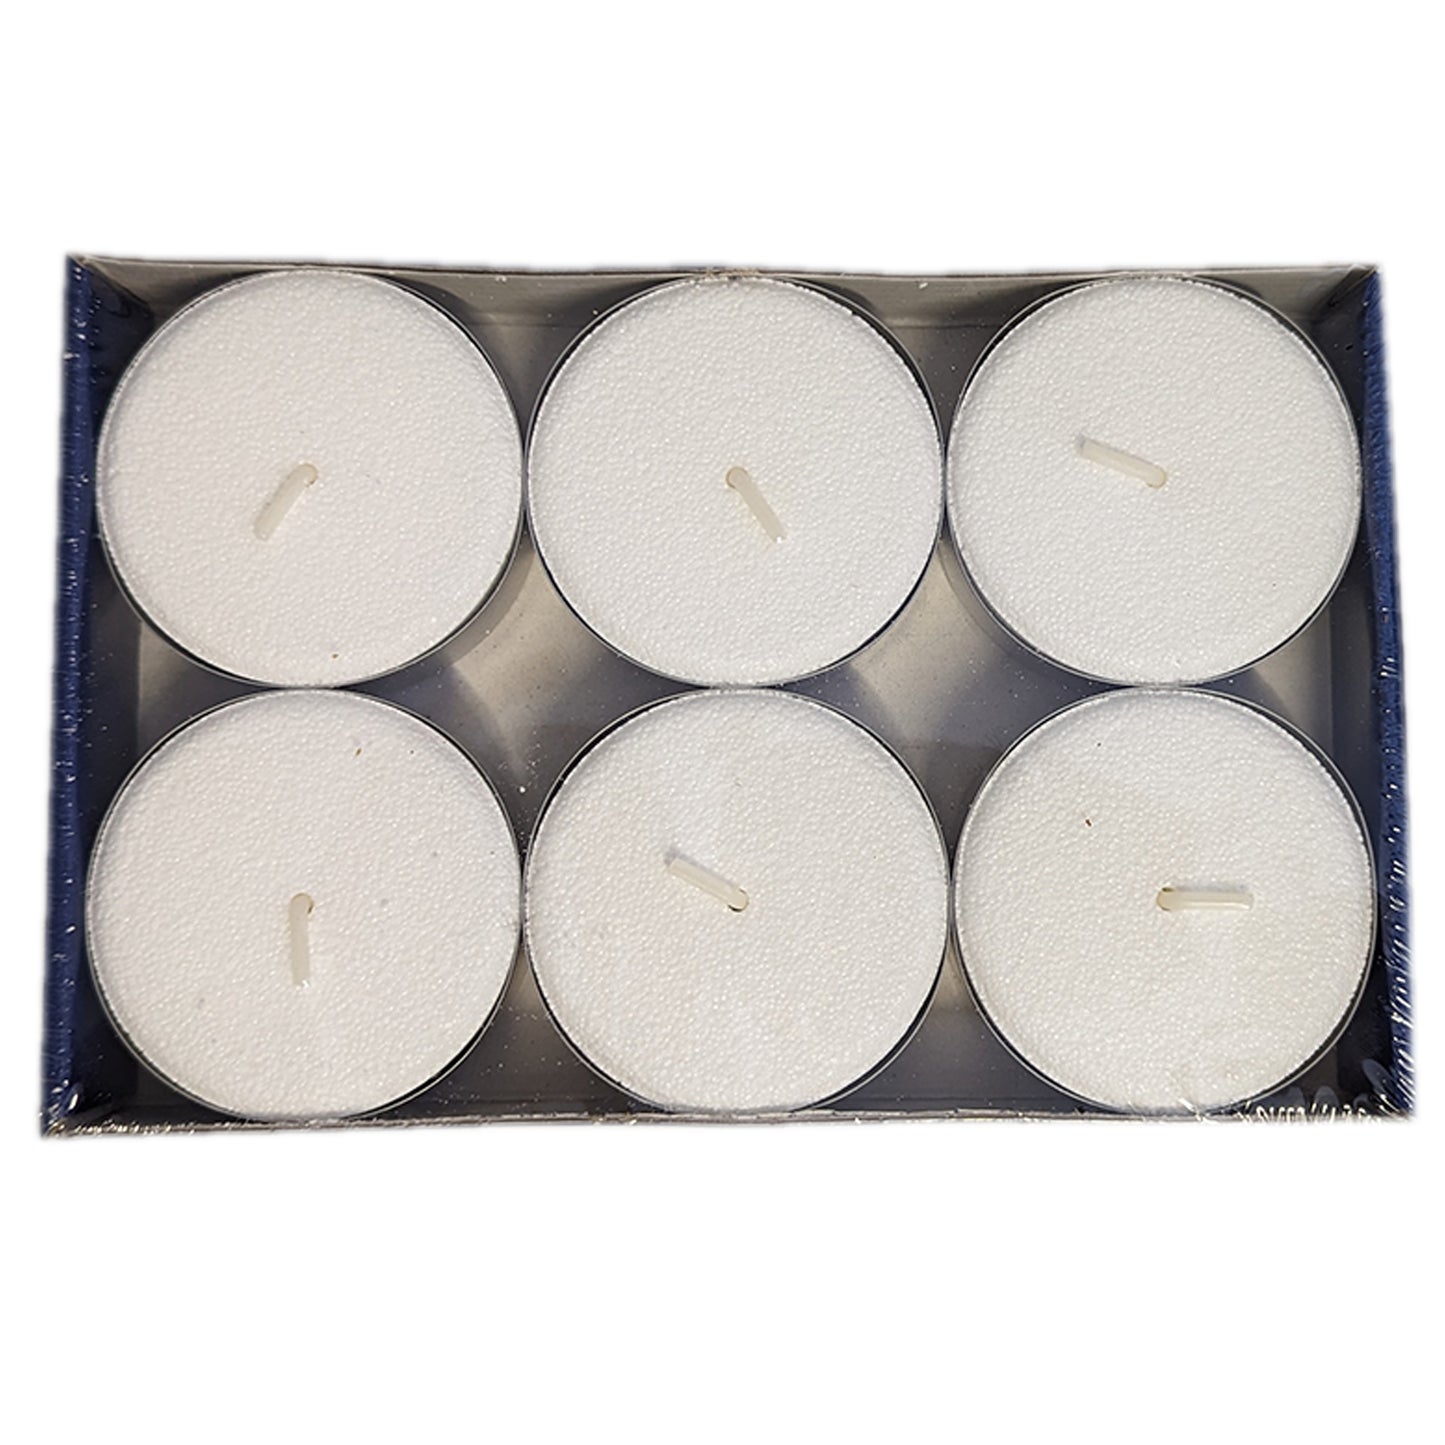 6er Pack ASP Maxi-Teelichte, 100 % Stearin, Ø 5,8 cm, weiß